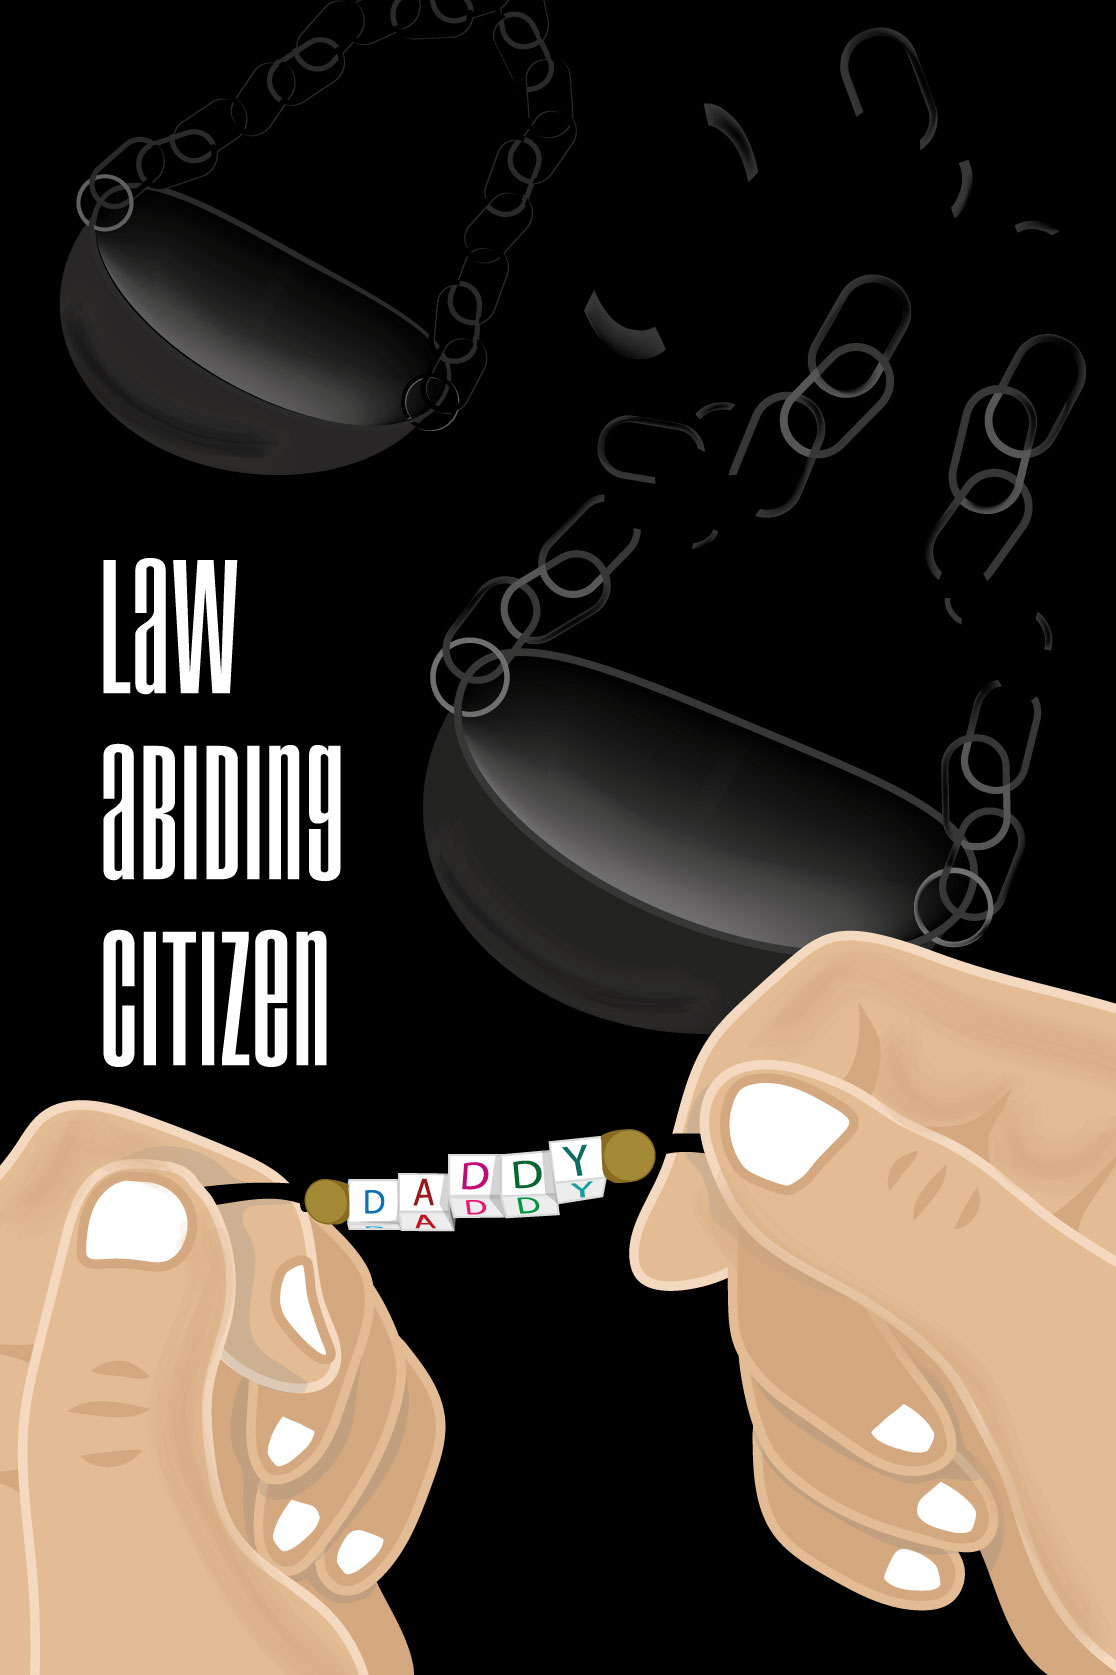 Law Abiding Citizen una peli al dia unapelialdia 1pelialdia